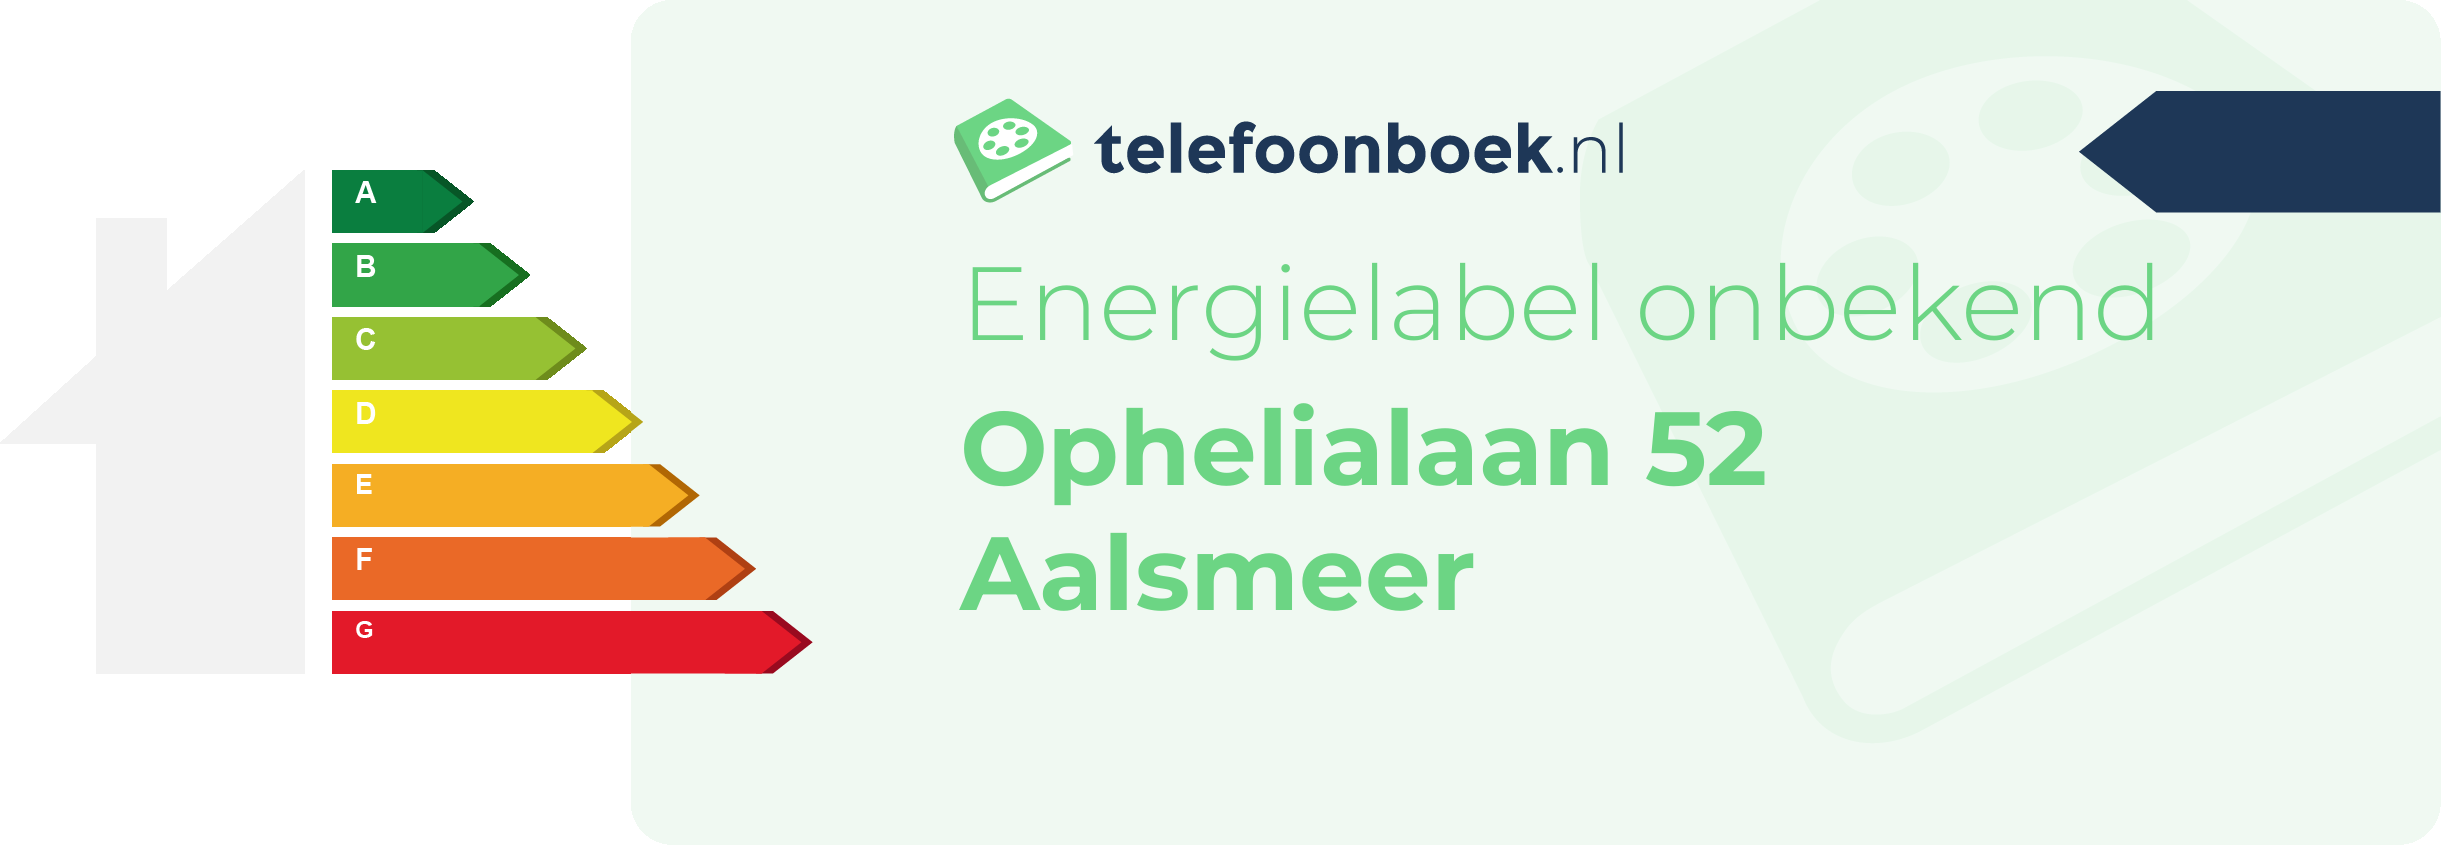 Energielabel Ophelialaan 52 Aalsmeer